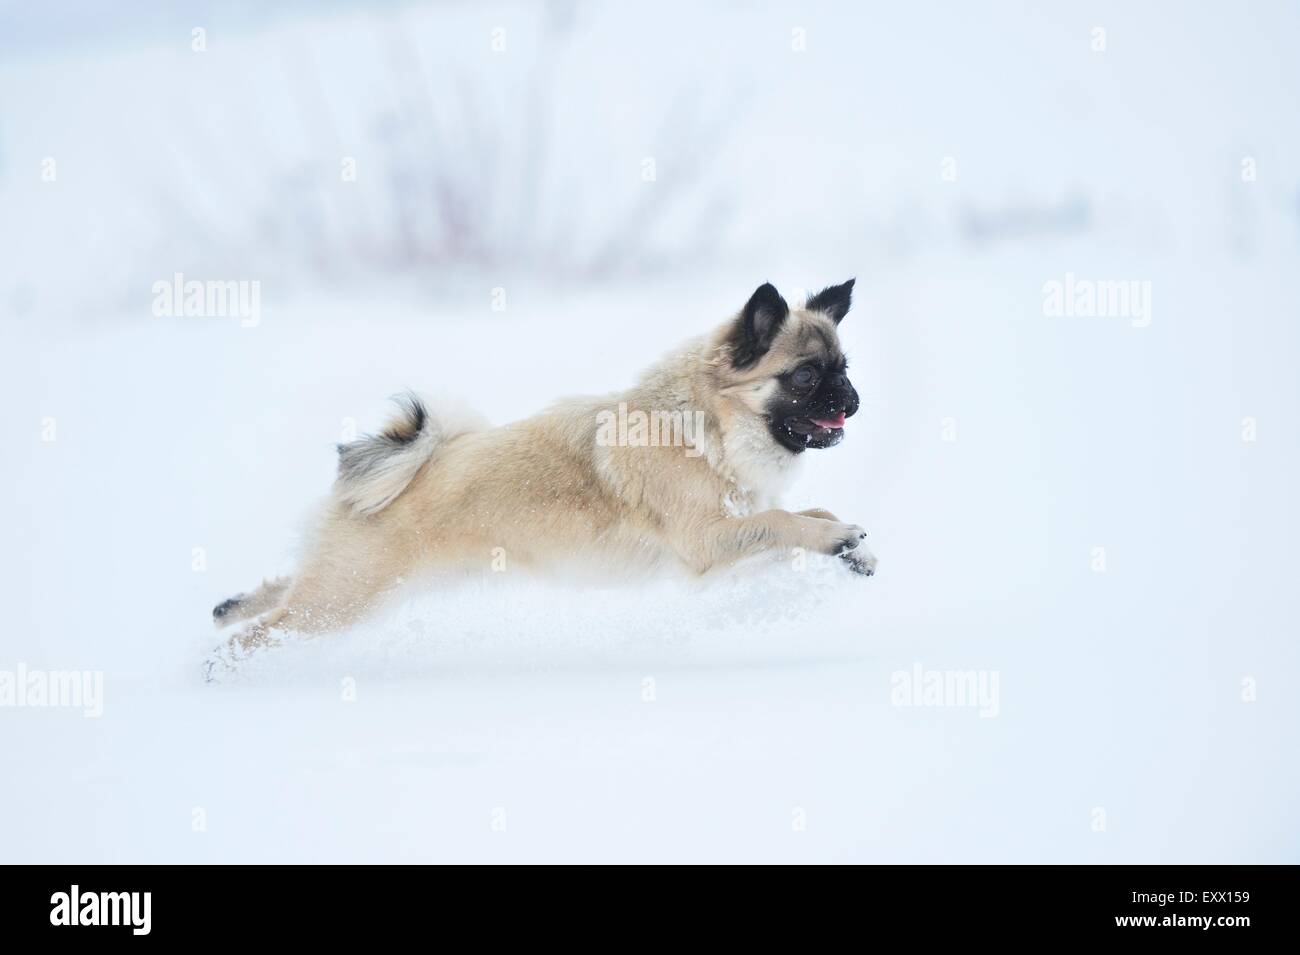 Chihuahua y mezcla pug perro corriendo en la nieve Foto de stock